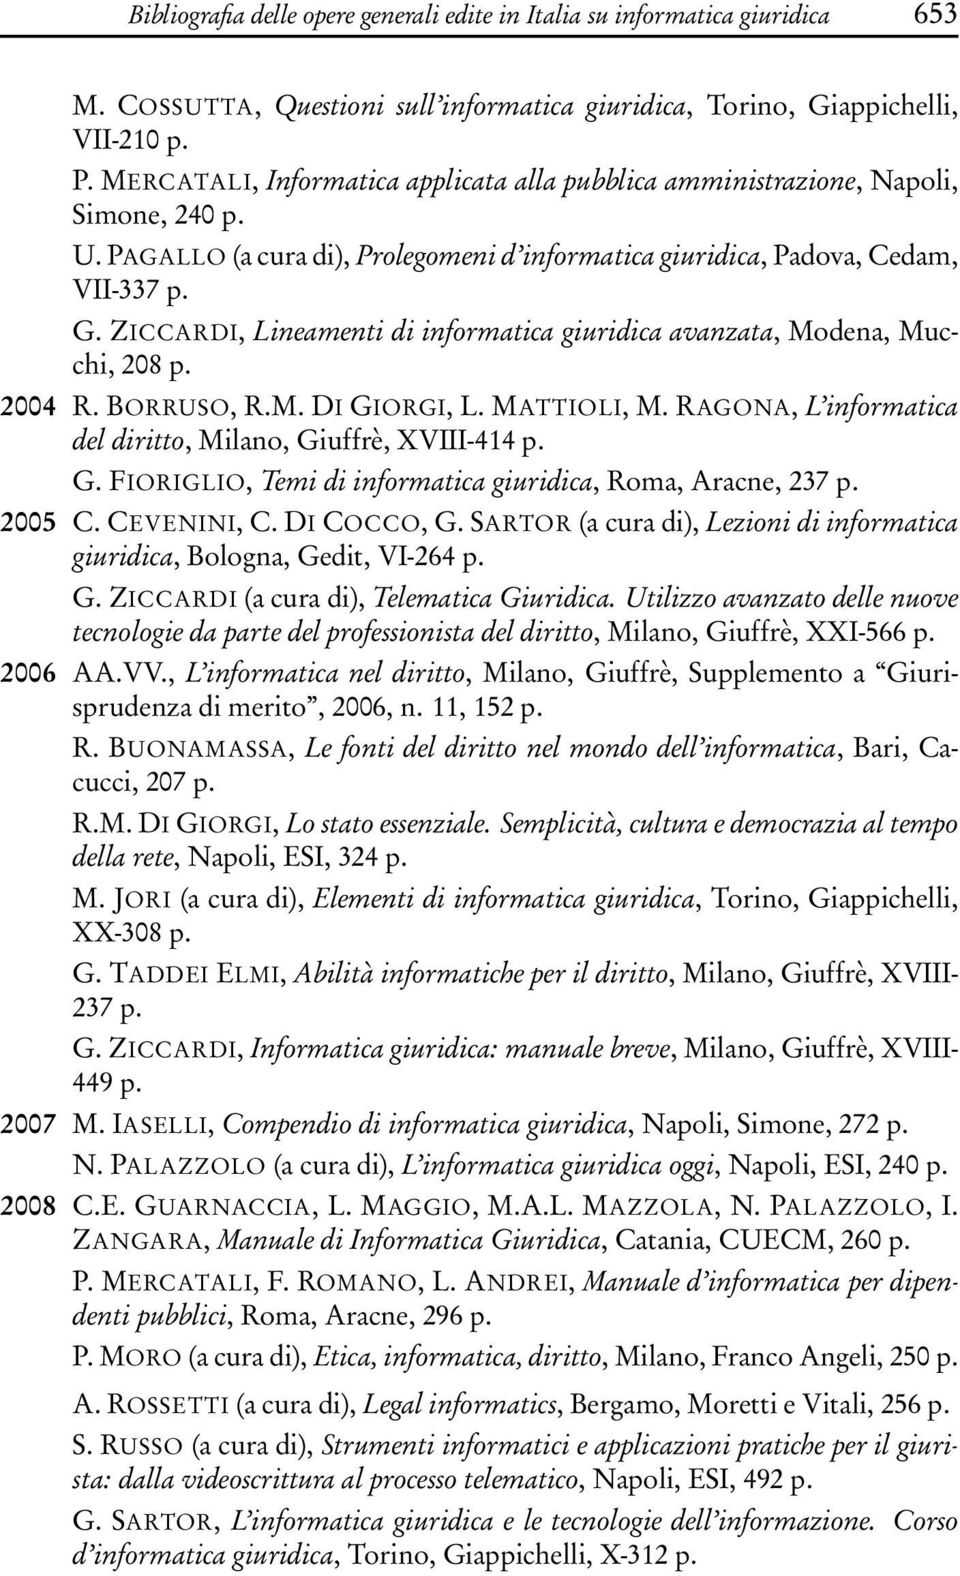 ZICCARDI, Lineamenti di informatica giuridica avanzata, Modena, Mucchi, 208 p. 2004 R. BORRUSO, R.M. DI GIORGI, L. MATTIOLI, M. RAGONA, L informatica del diritto, Milano, Giuffrè, XVIII-414 p. G. FIORIGLIO, Temi di informatica giuridica, Roma, Aracne, 237 p.